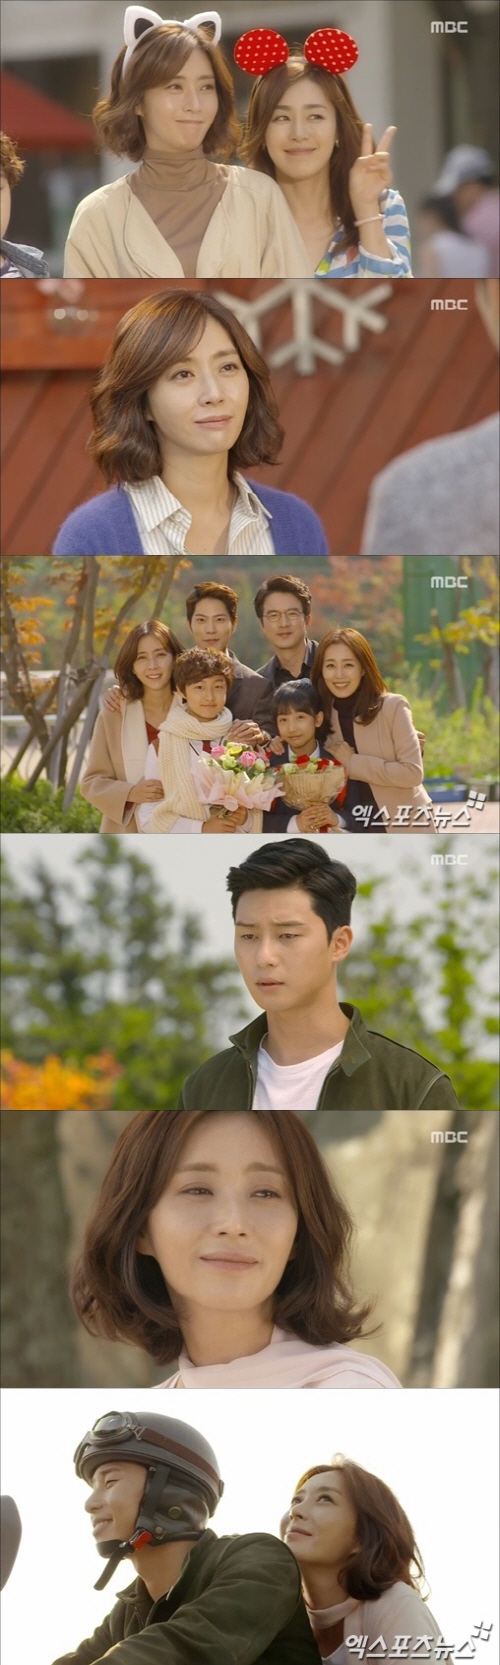 '마마'가 따뜻한 웰메이드극으로 종영했다 ⓒ MBC 방송화면